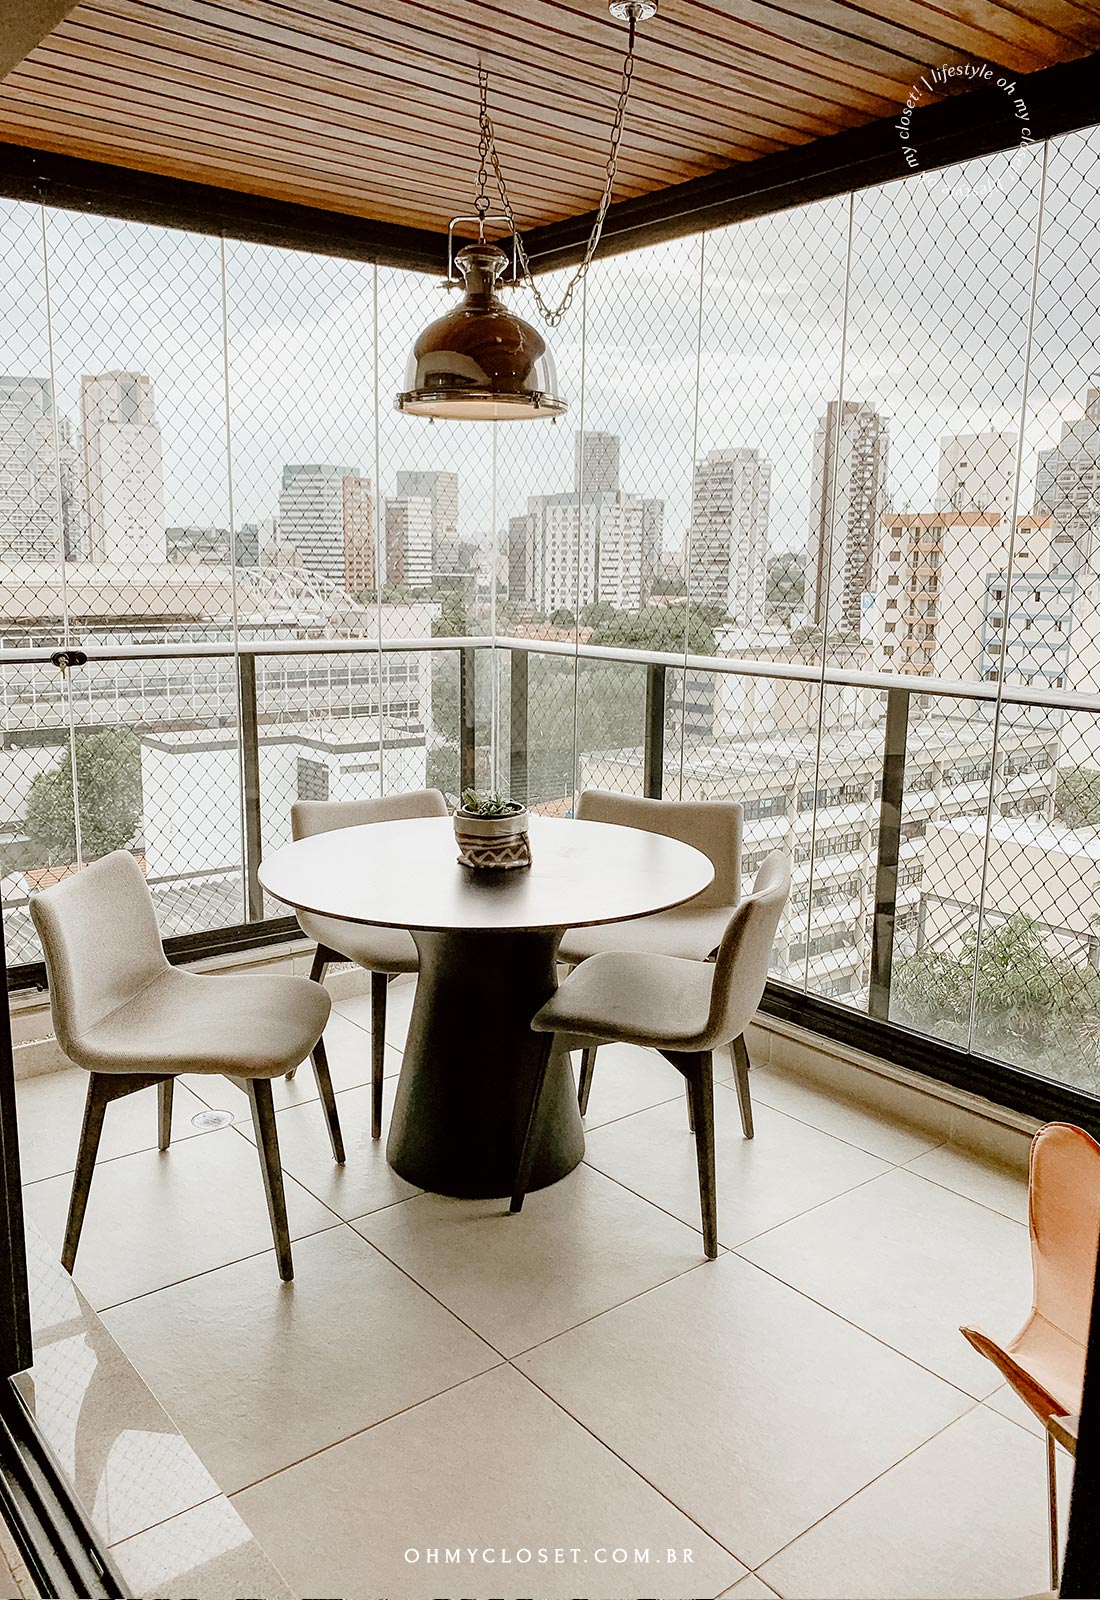 Outro angulo da sacada apartamento condomínio Jazz em Pinheiros São Paulo.